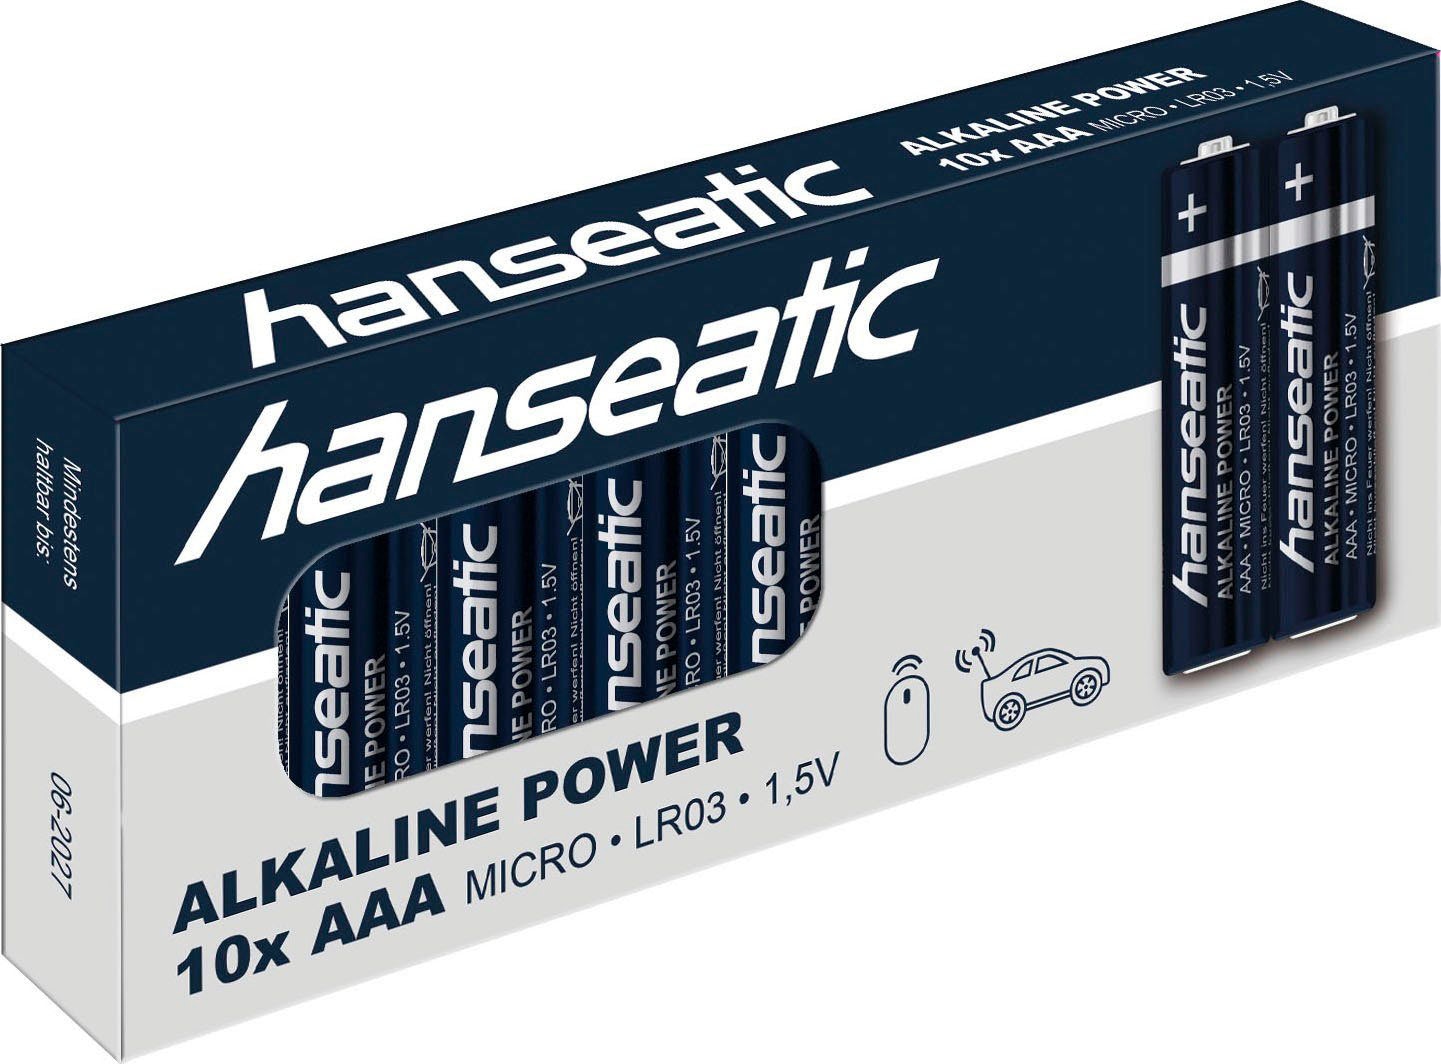 Hanseatic Batterie »48 Stück Batterie Mix Set«, (48 St.), 20x AA + 20x AAA + 4x 9V + 4x C Batterien